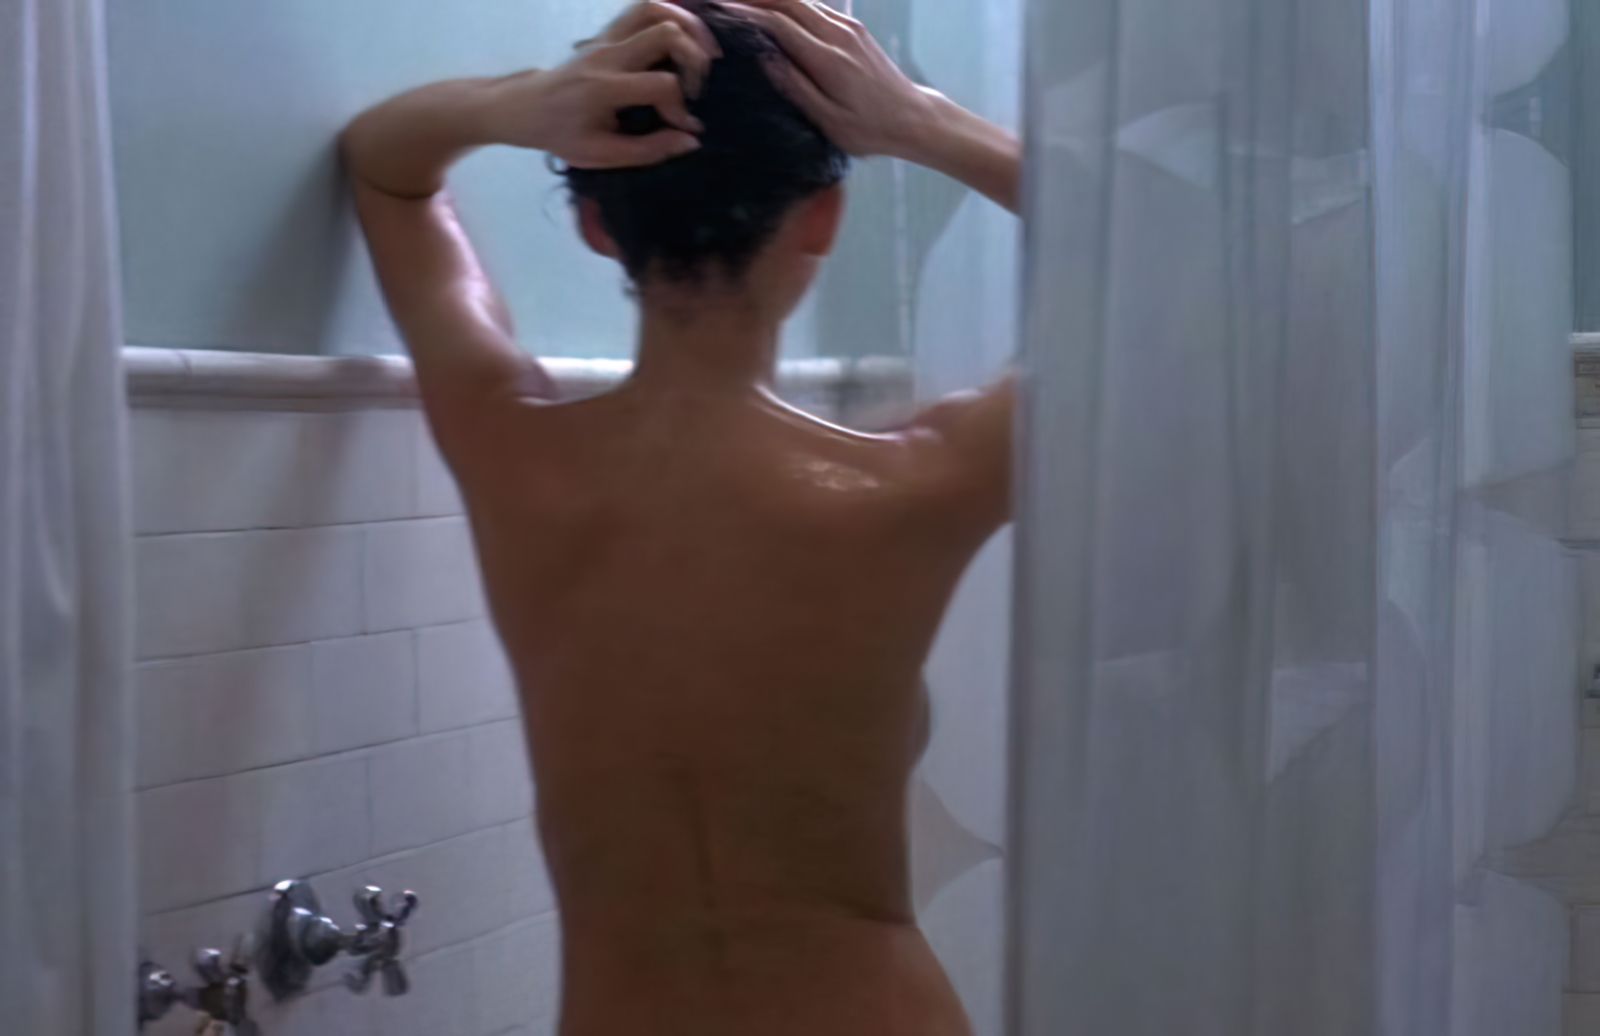 Sarah Michelle Gellar Nude & Sexy Collection (153 Photos)